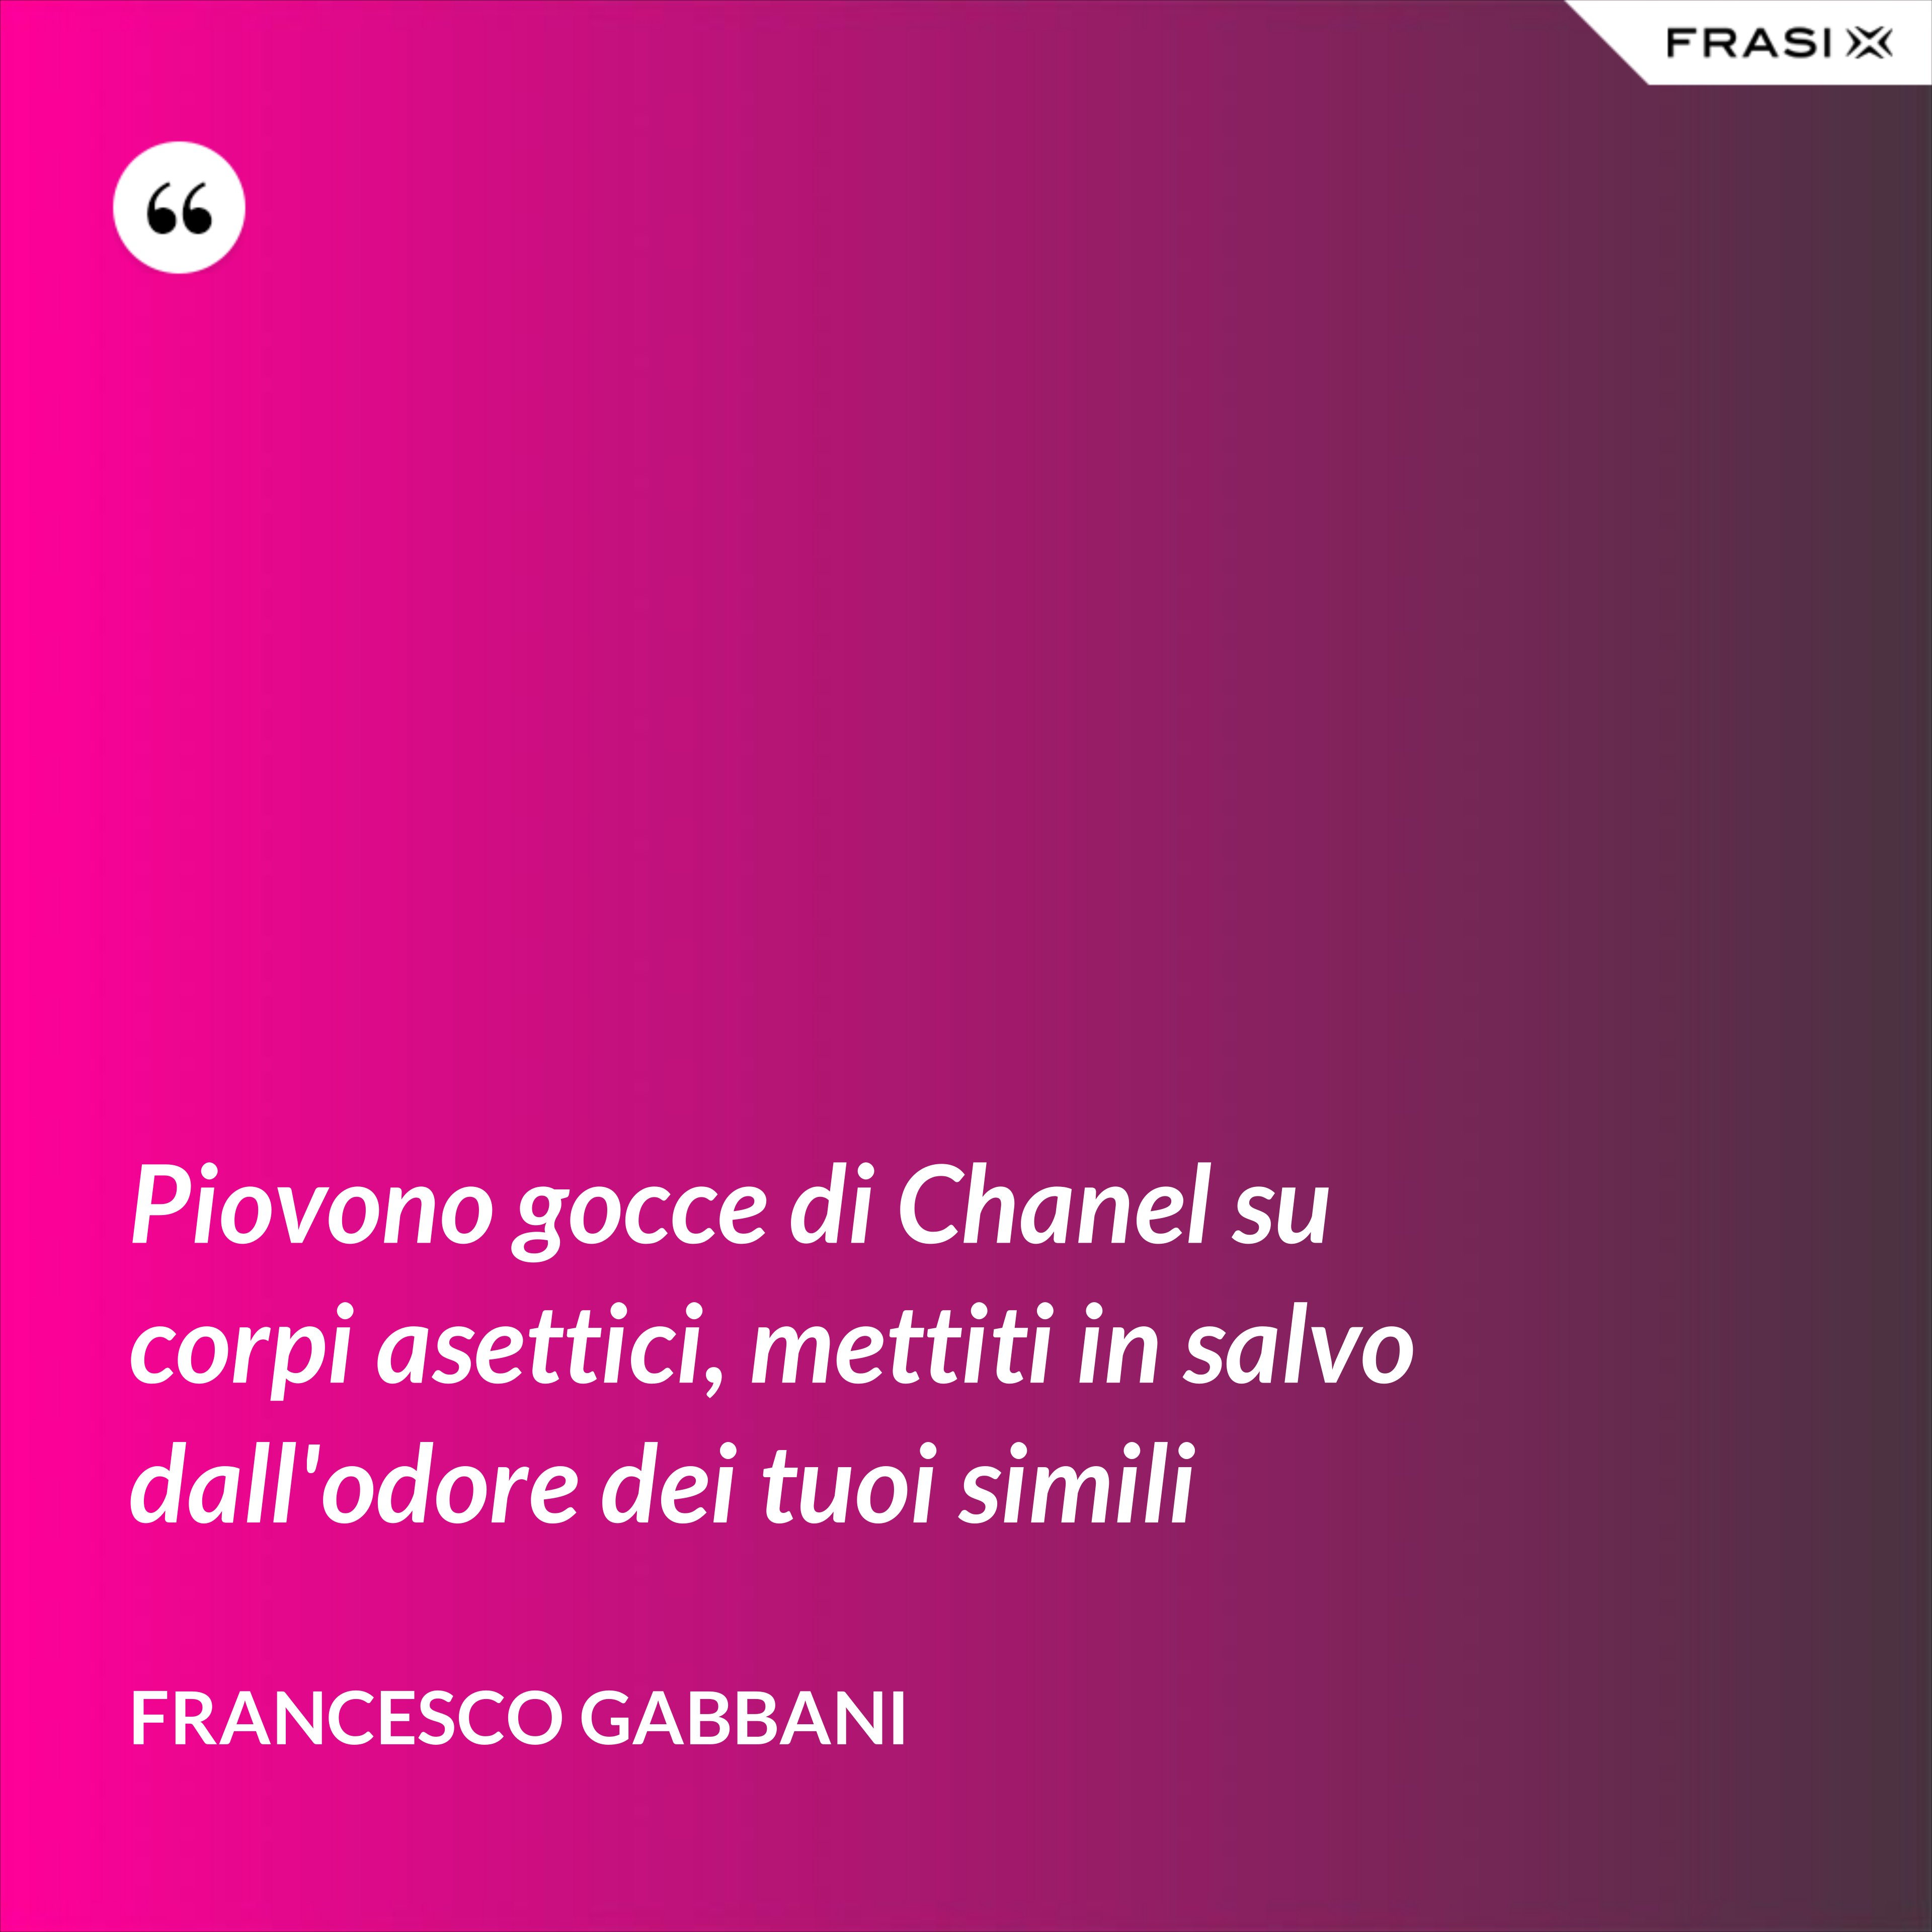 Piovono gocce di Chanel su corpi asettici, mettiti in salvo dall'odore dei tuoi simili - Francesco Gabbani